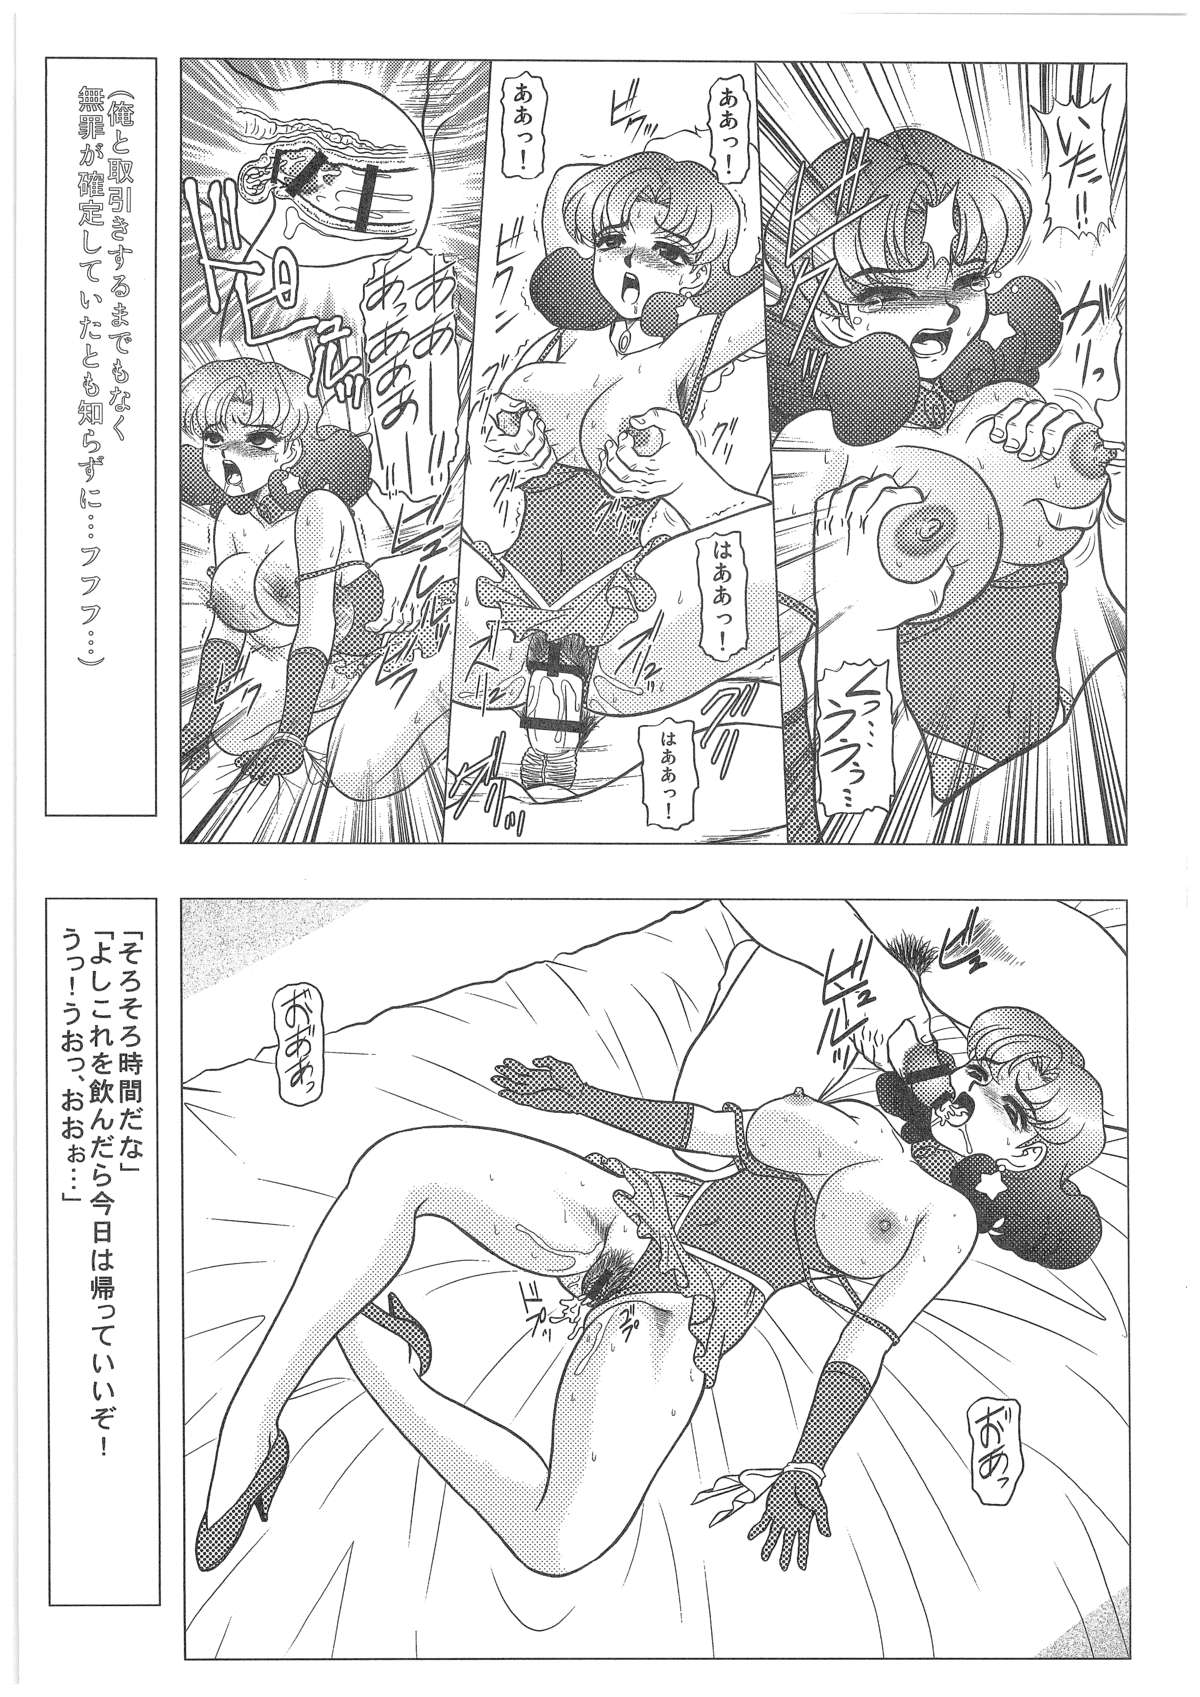 [Dakimakuma, Jingai Makyou Club (WING☆BIRD)] CHARA EMU W☆B010 GONDAM 008 ZZ-W-F91 (Various) page 28 full